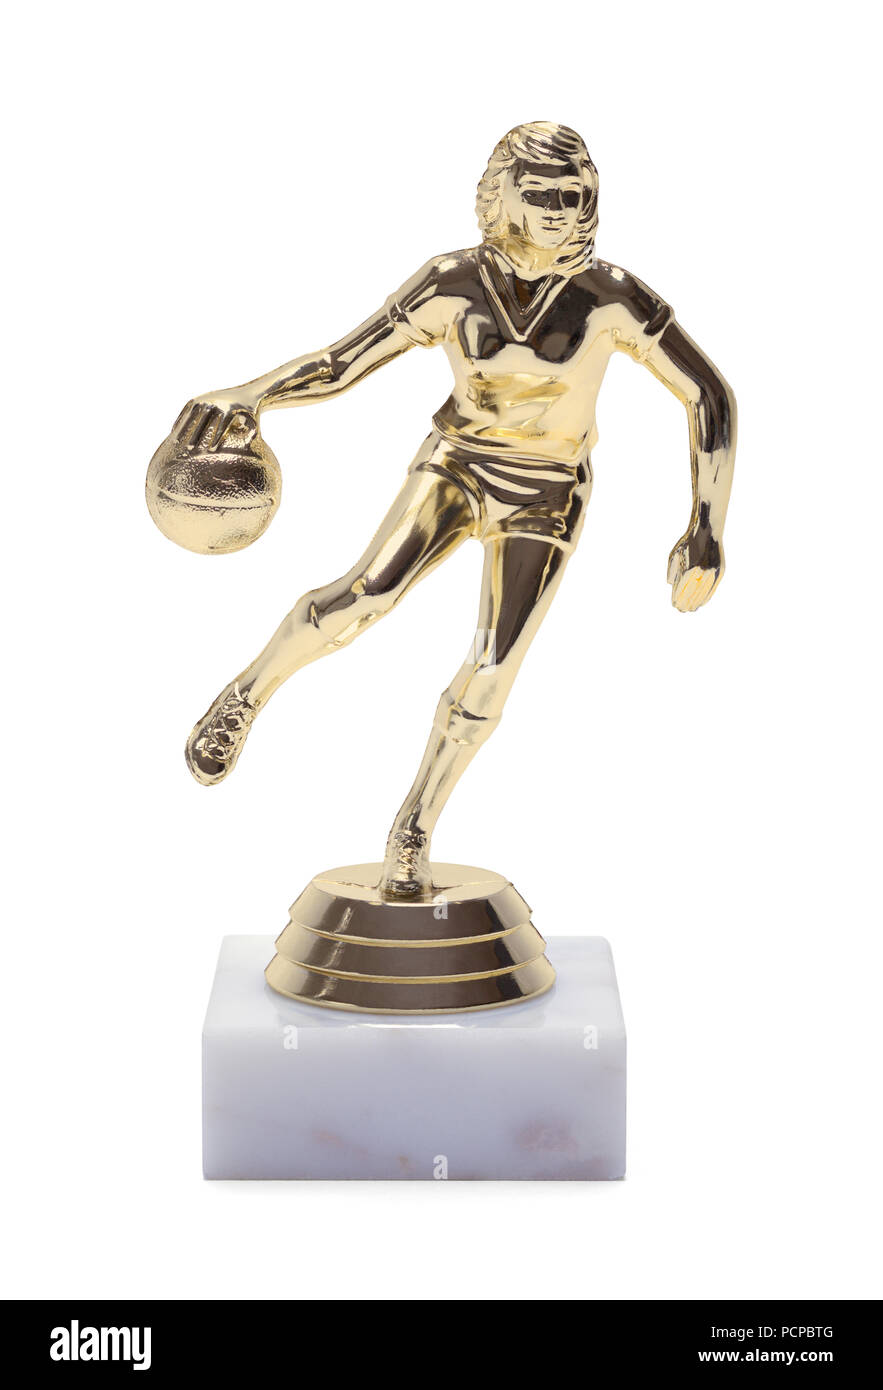 Trophée d'or de basket-ball de womans isolé sur un fond blanc. Banque D'Images